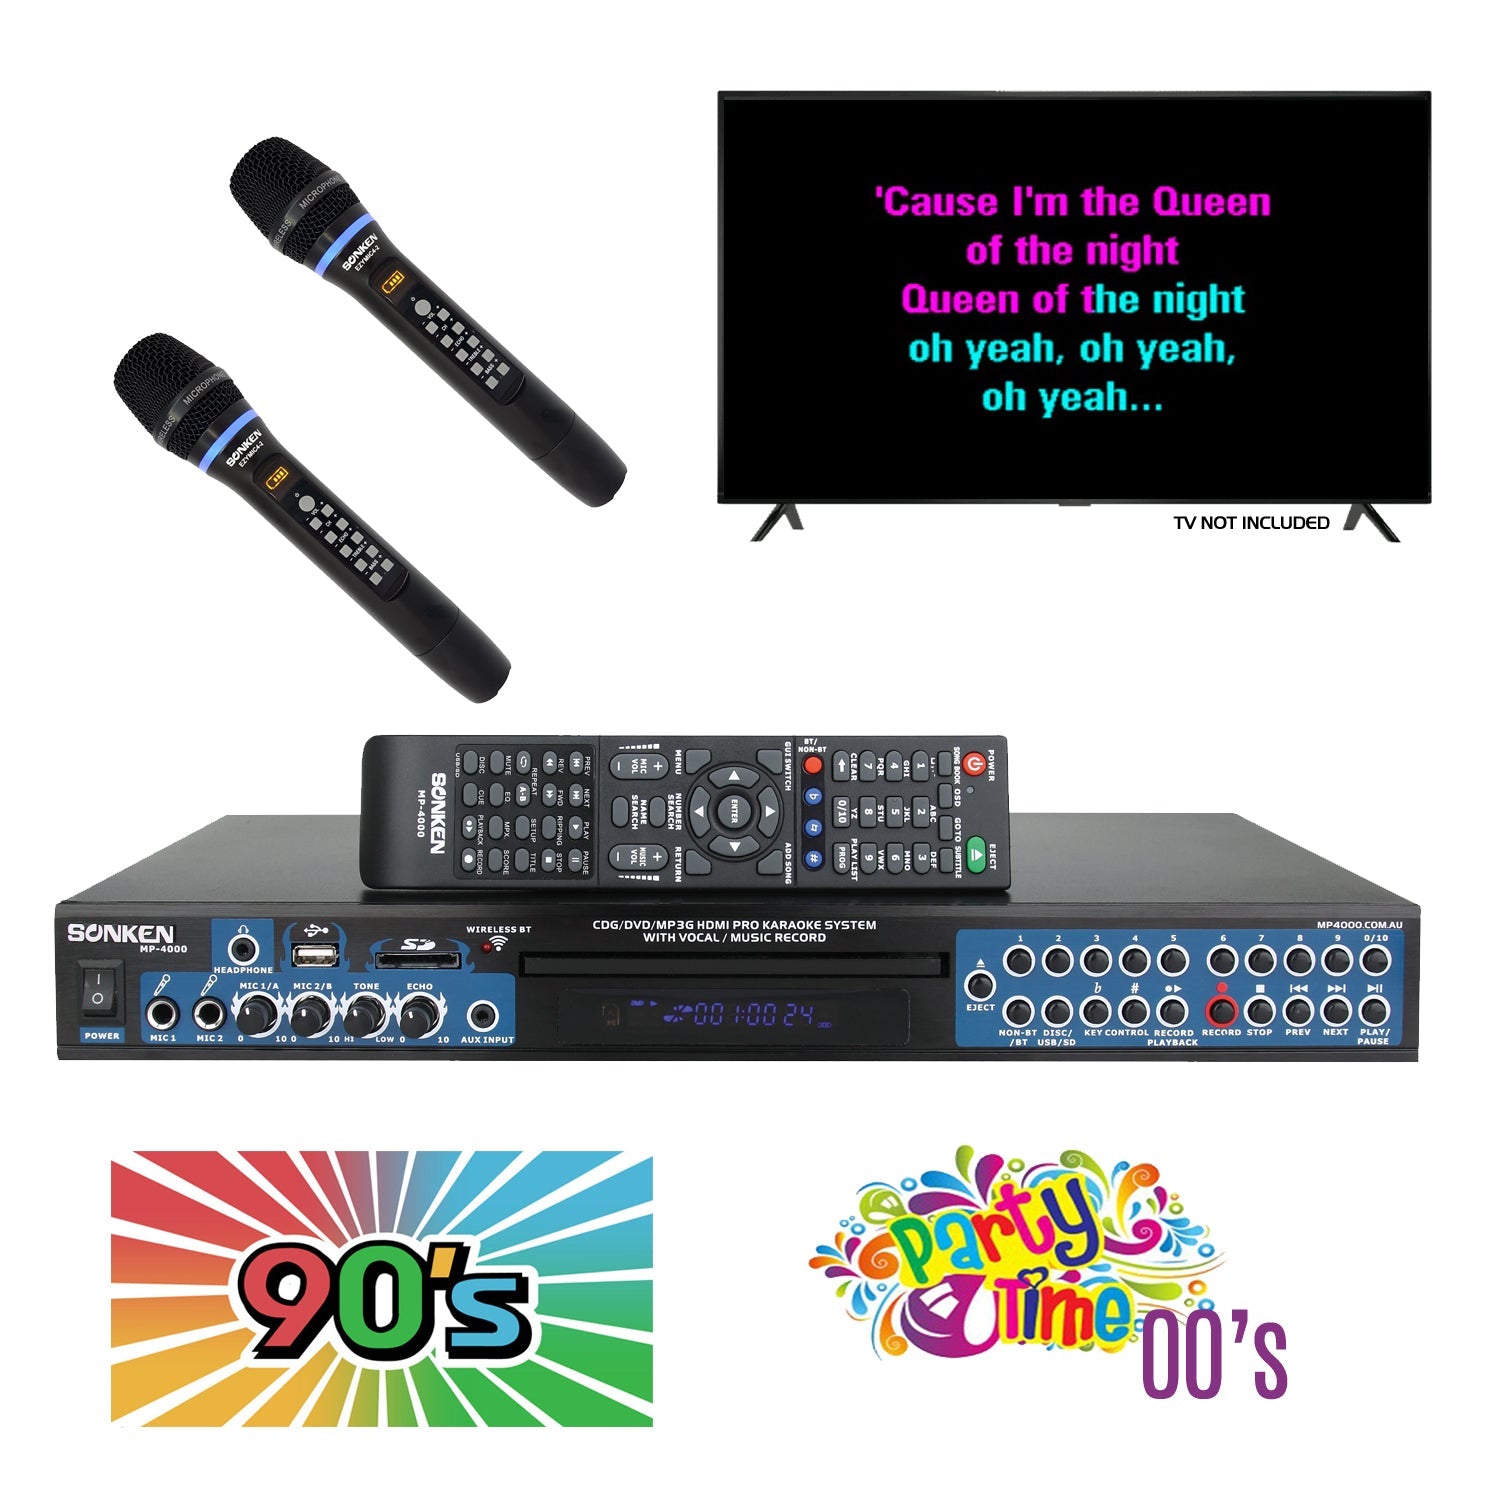 Sonken MP4000 Pro Karaoke Machine + 435 Songs from the 90's & 00's + 2 Wireless Microphones - Karaoke Home Entertainment